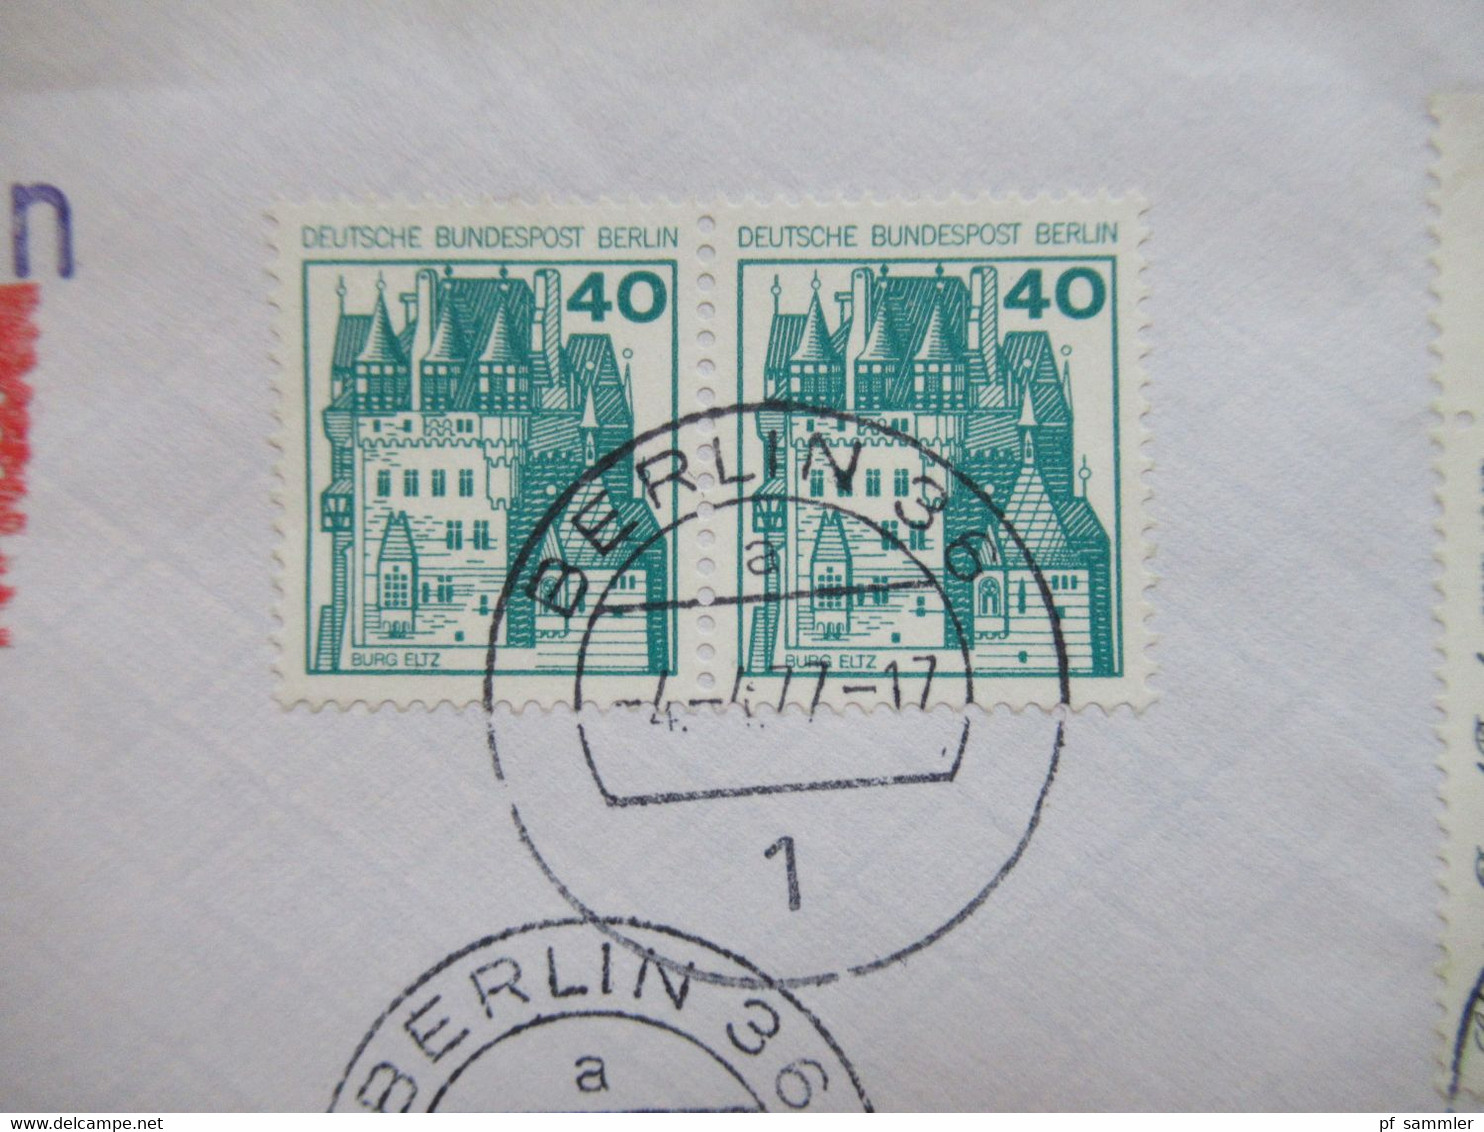 Berlin 1977 Freimarken BuS Nr.535 Waagerechtes Paar Und Nr.537 Seitenrand Rechts MiF Einschreiben 1000 Berlin 36 - Lettres & Documents